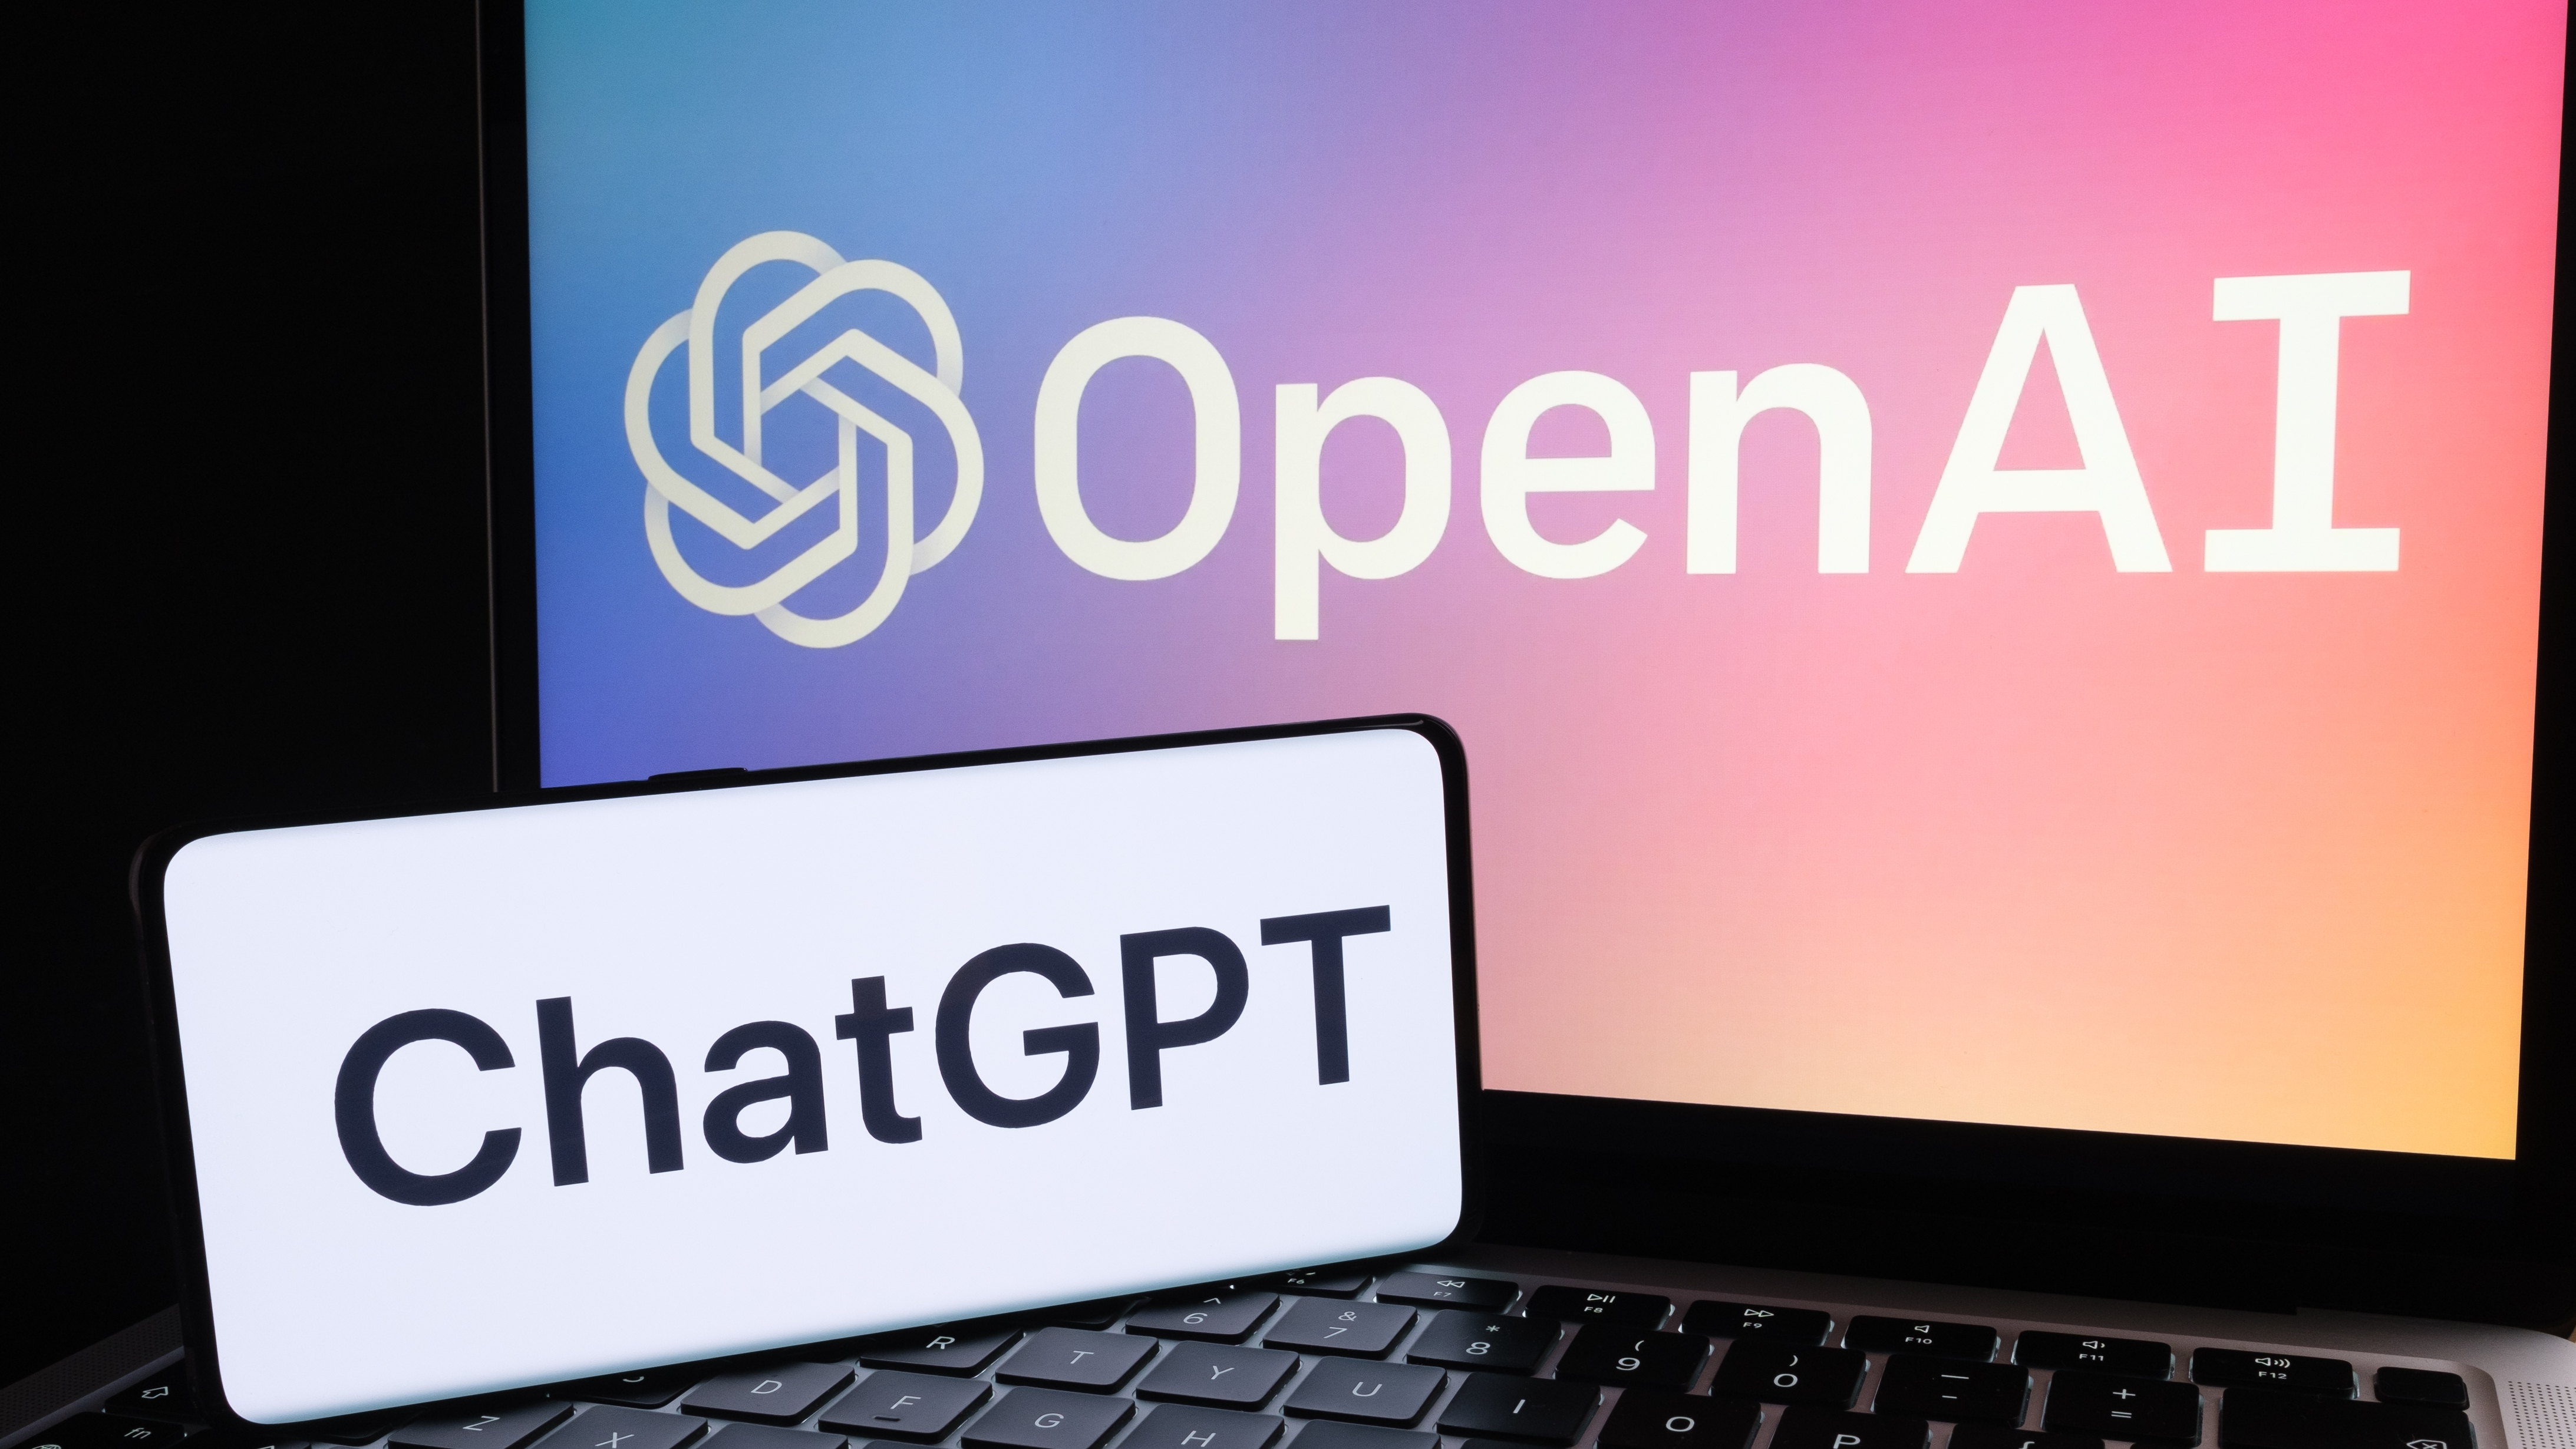 Điện thoại có logo ChatGPT và máy tính xách tay có logo OpenAI